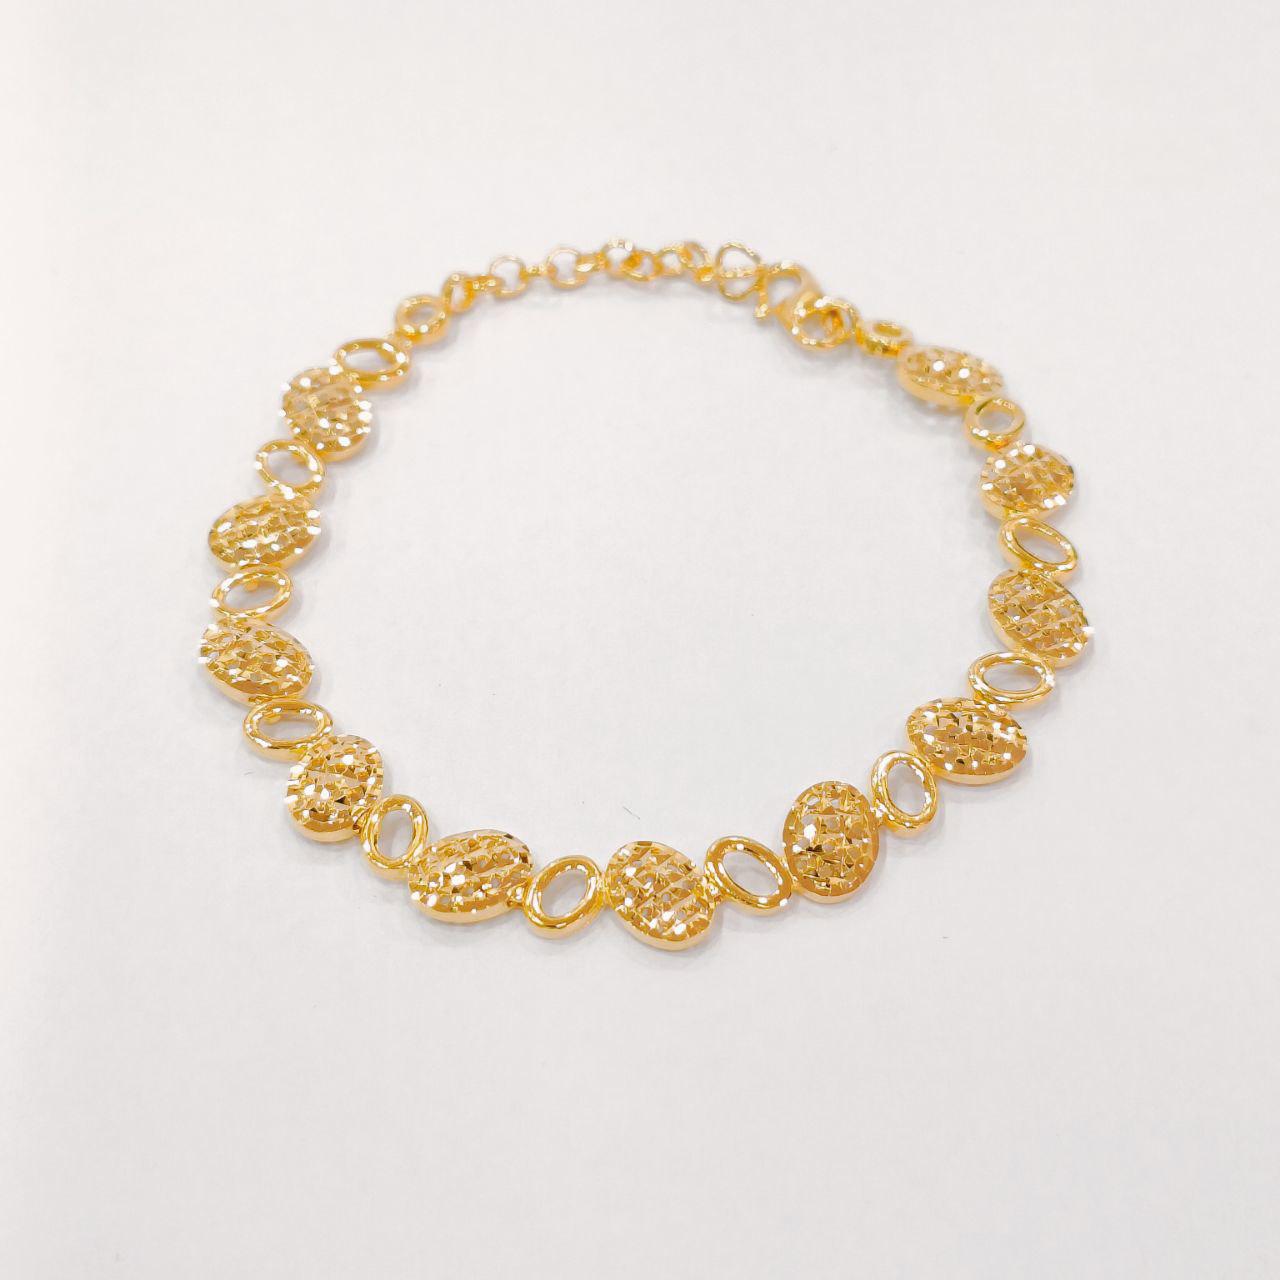 22k / 916 Gold Single Solid Bracelet-916 gold-Best Gold Shop